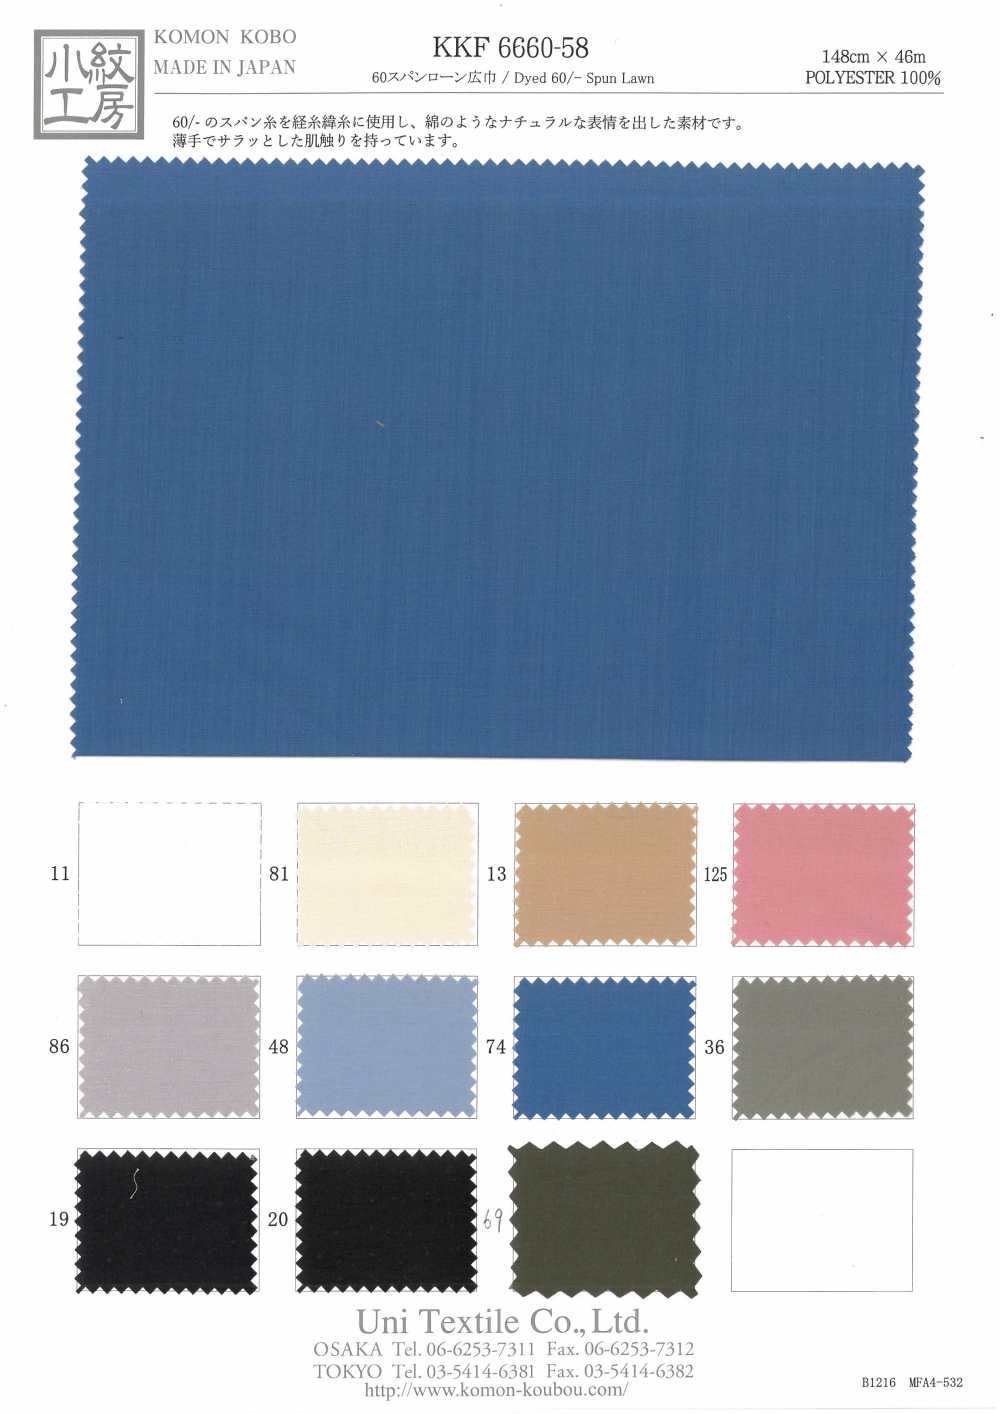 KKF6660-58 60 Khoảng Vải Cotton Lawn Rộng Uni Textile